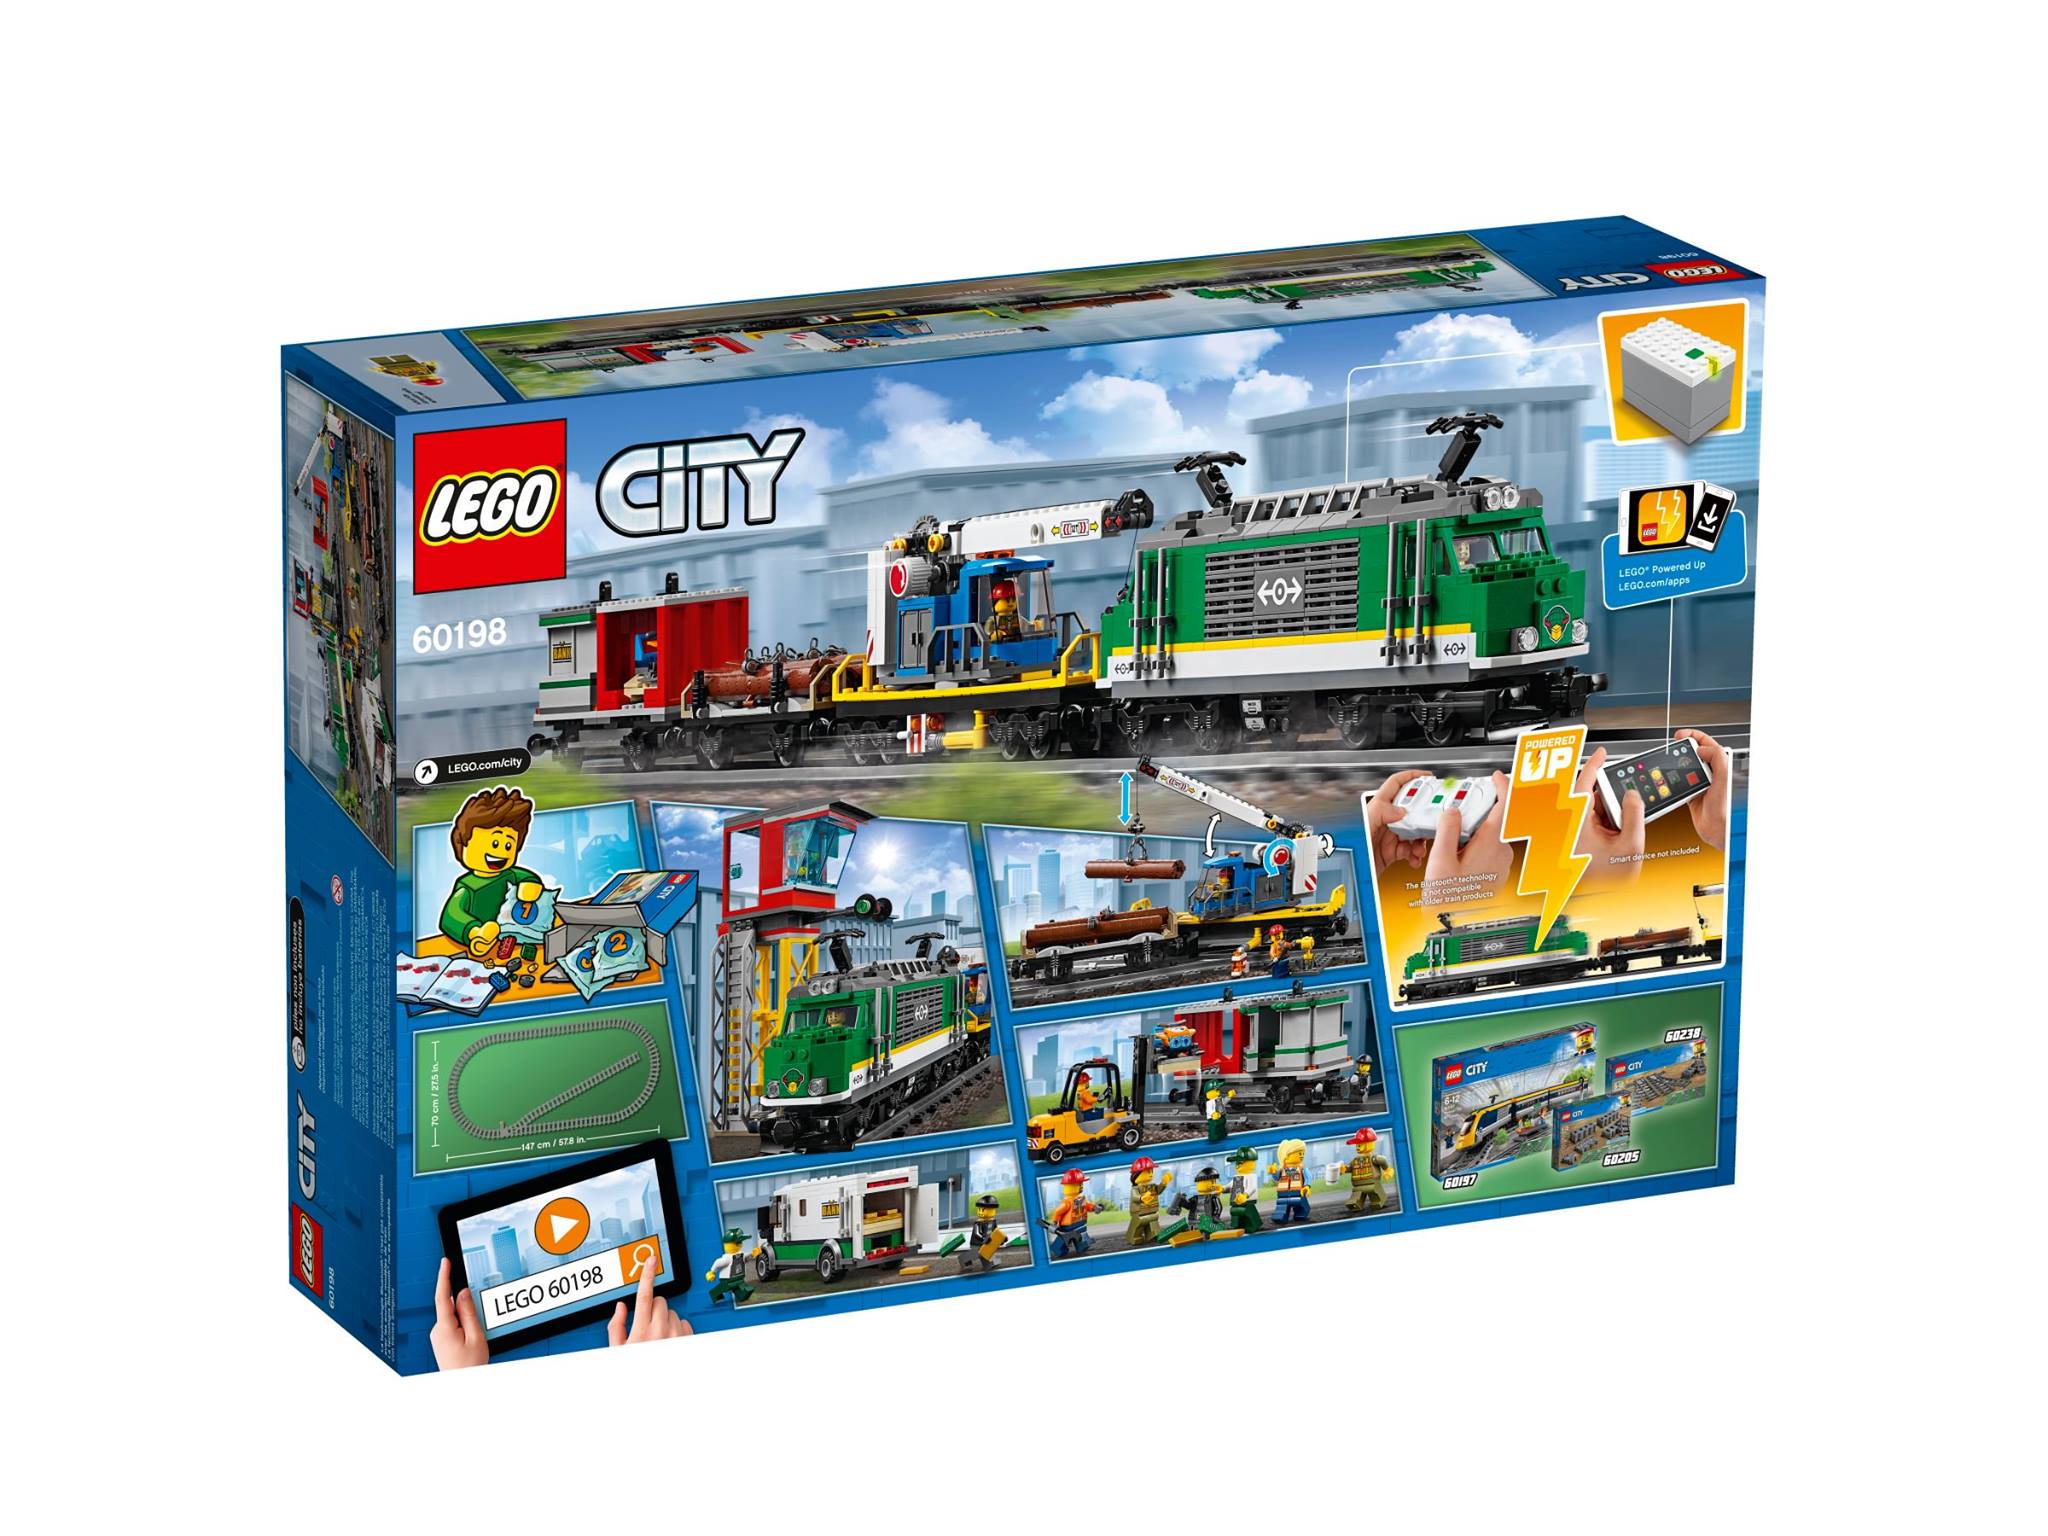 LEGO city cargo train 2018 (set 60198) box back